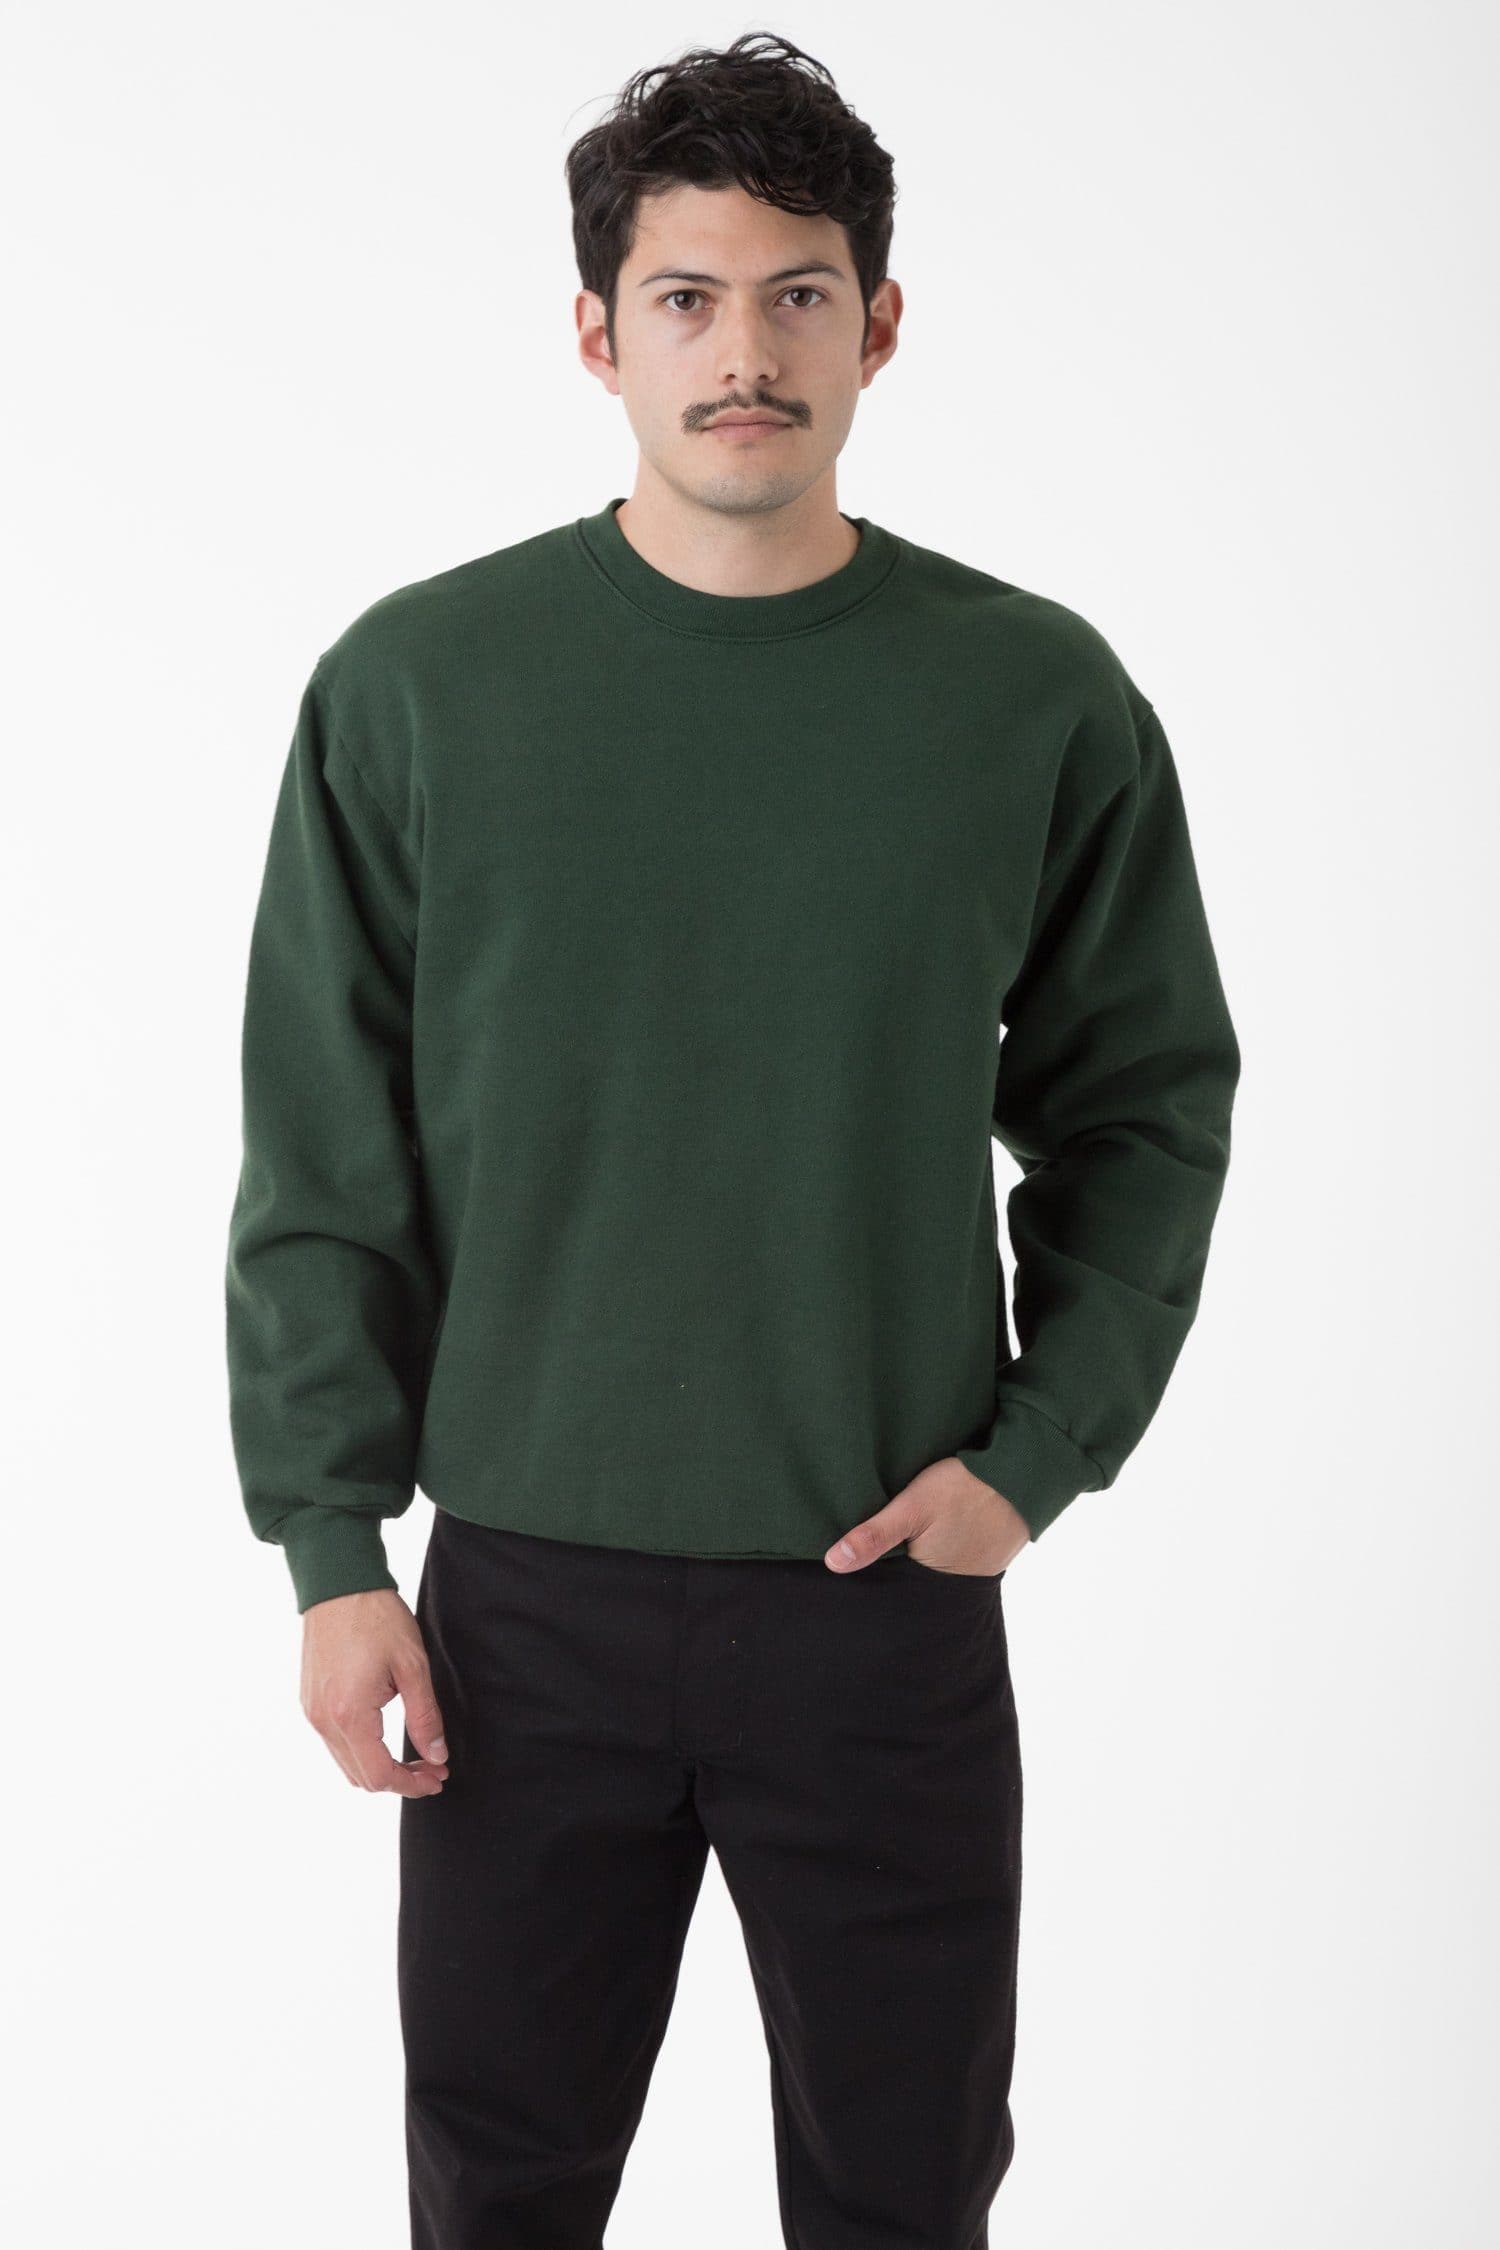 送料無料 ヴィンス Vince メンズ 男性用 ファッション セーター